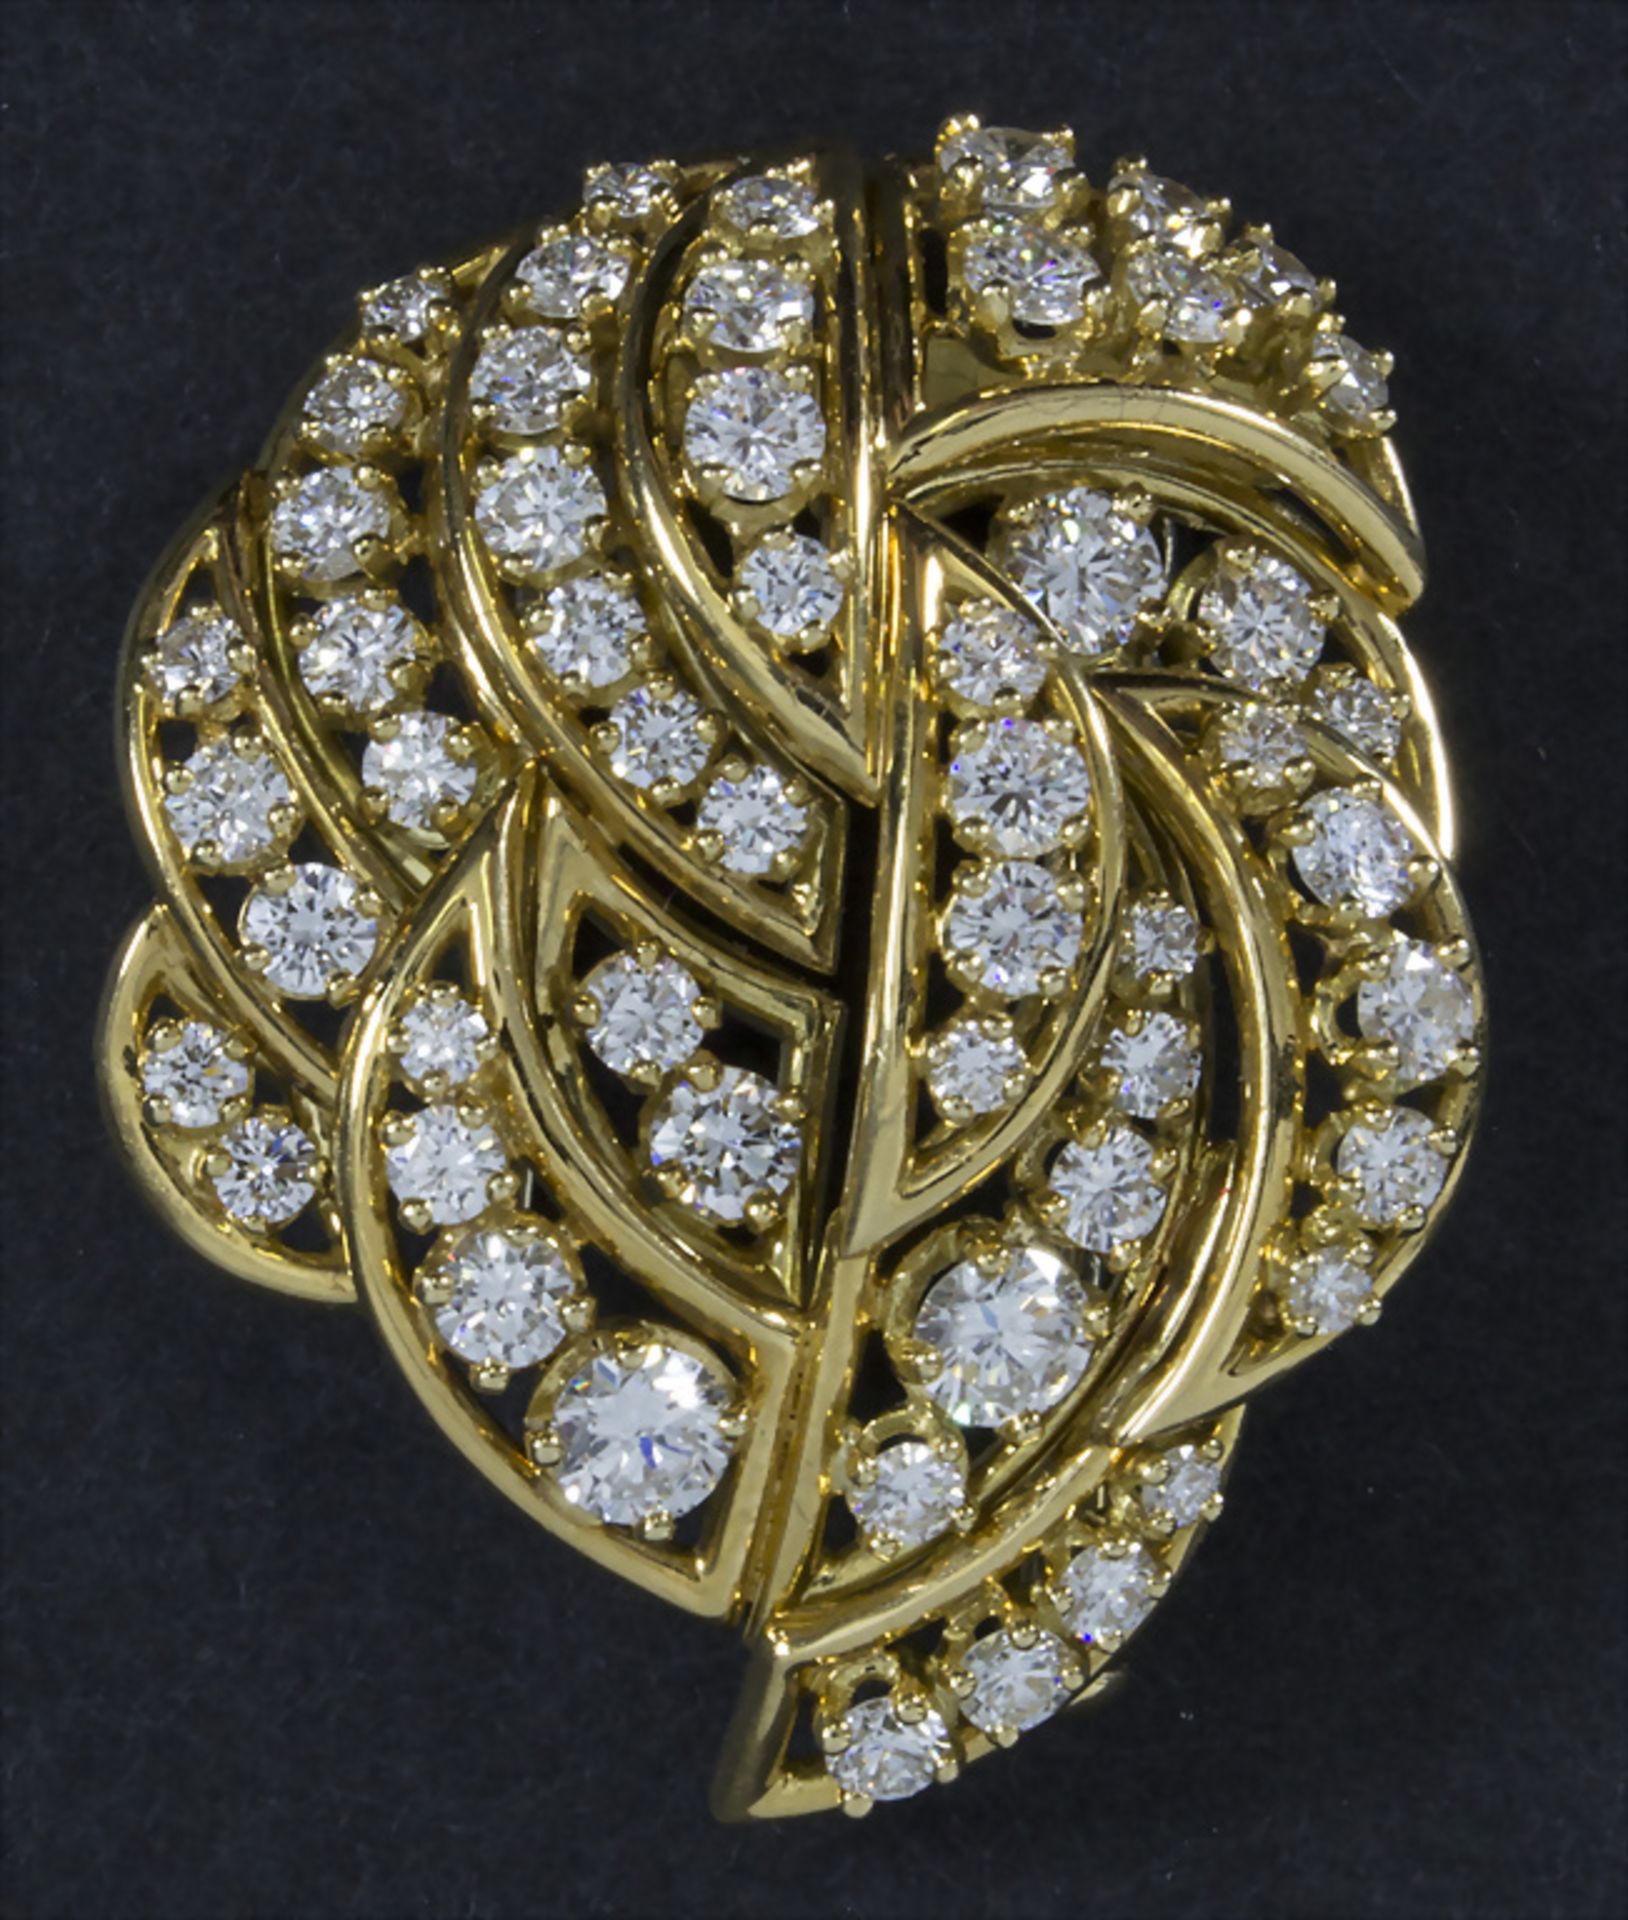 Goldbrosche mit Diamanten / An 18k gold brooch with diamonds, 20. Jh.